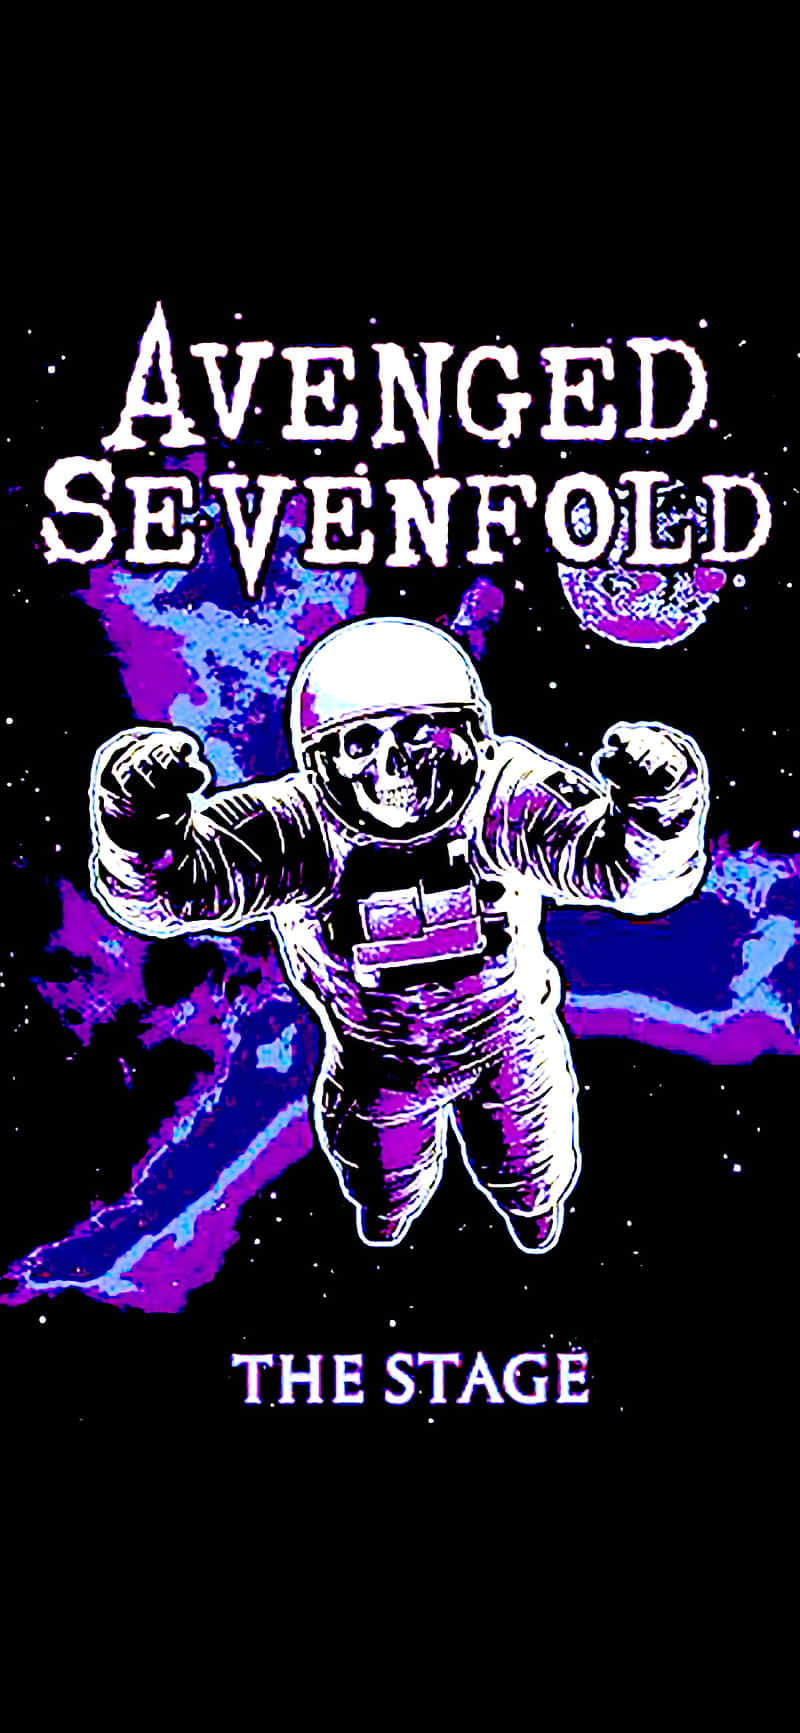 Zeigensie Ihre Liebe Für Avenged Sevenfold Mit Diesem Iphone-hintergrundbild Wallpaper